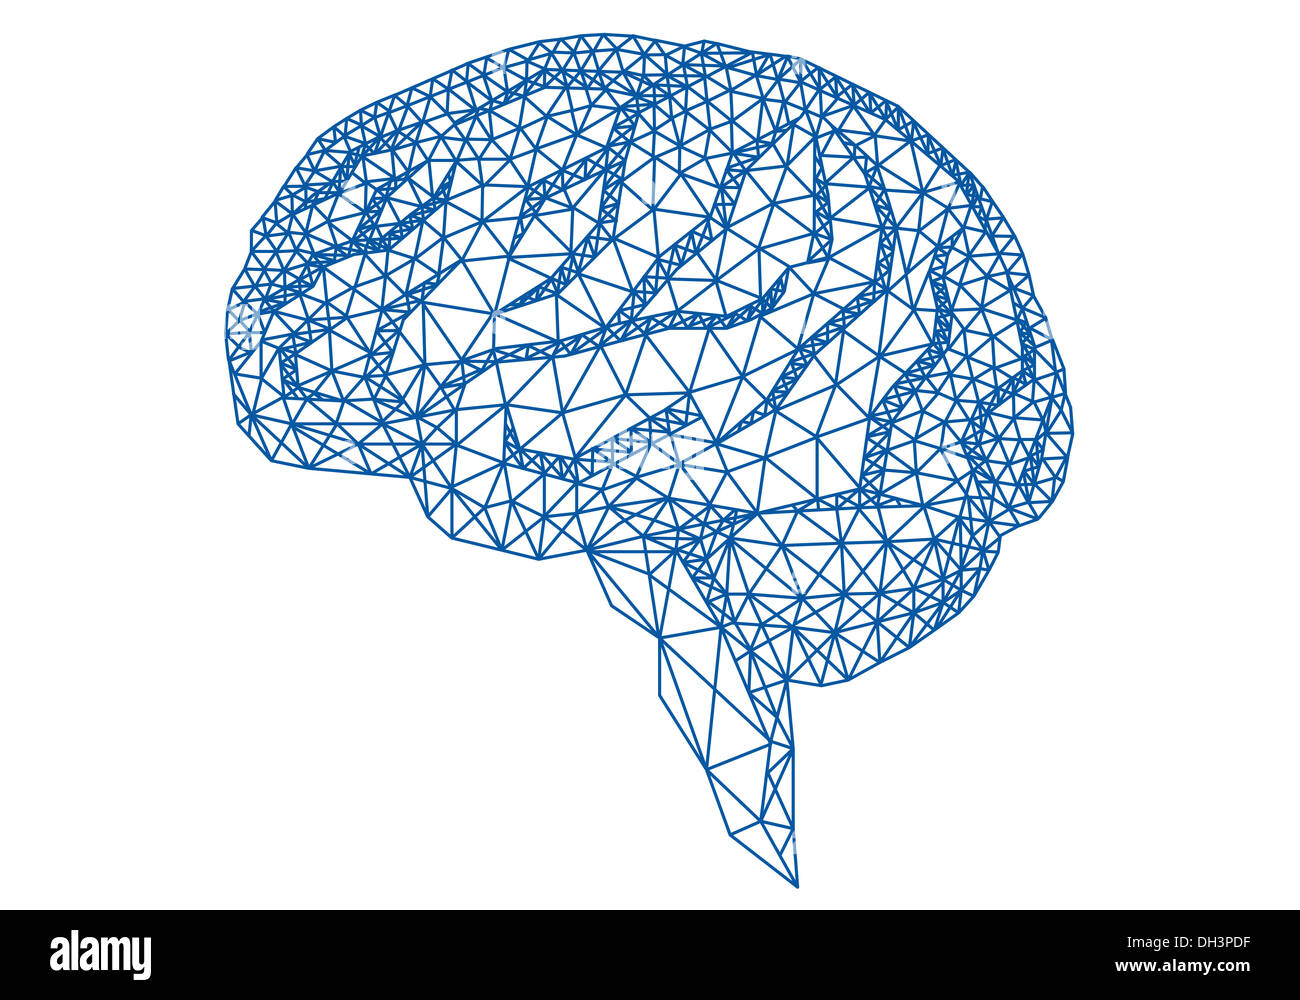 abstrakt blau menschlichen Gehirns mit geometrischen Mesh-Muster, Vektor-illustration Stockfoto